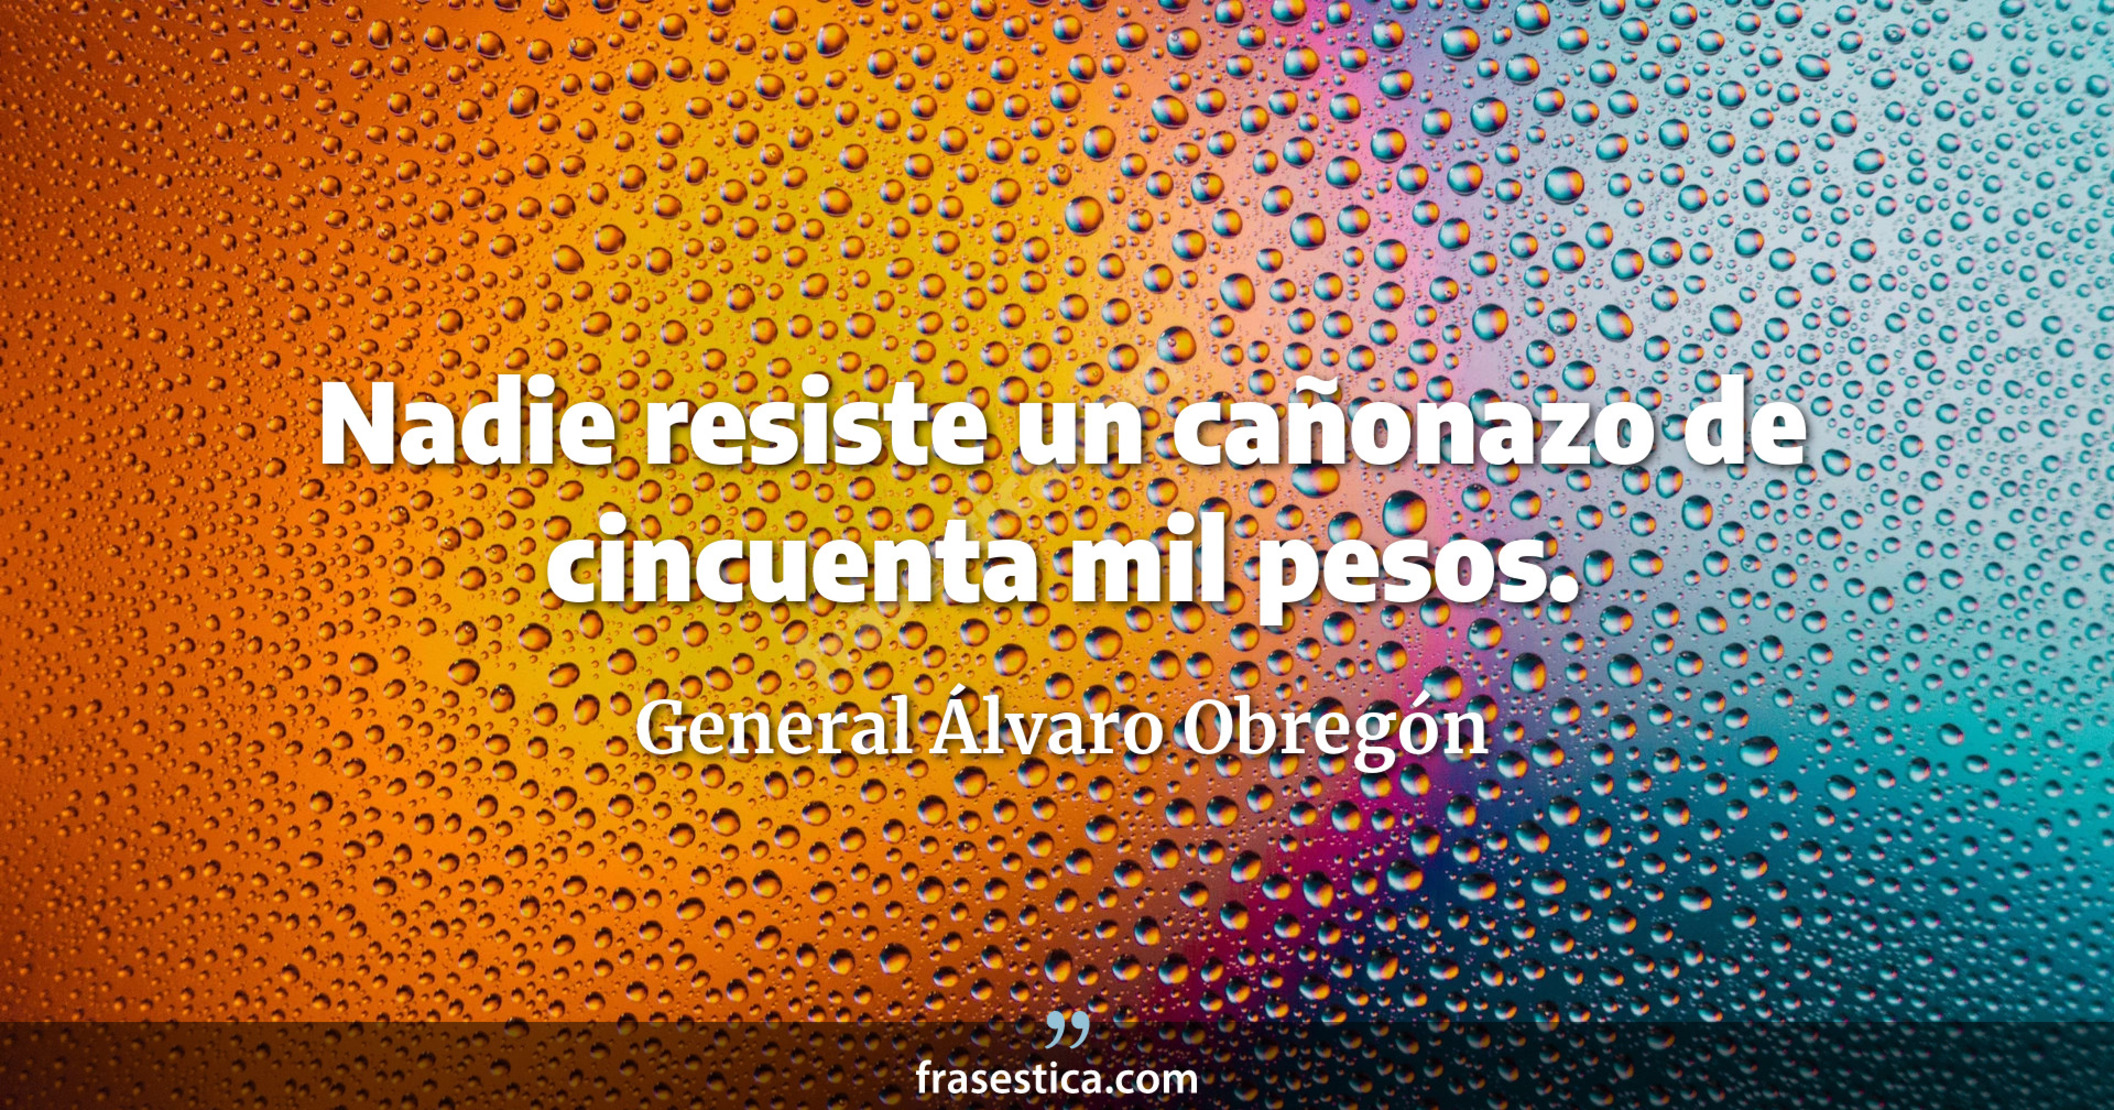 Nadie resiste un cañonazo de cincuenta mil pesos. - General Álvaro Obregón